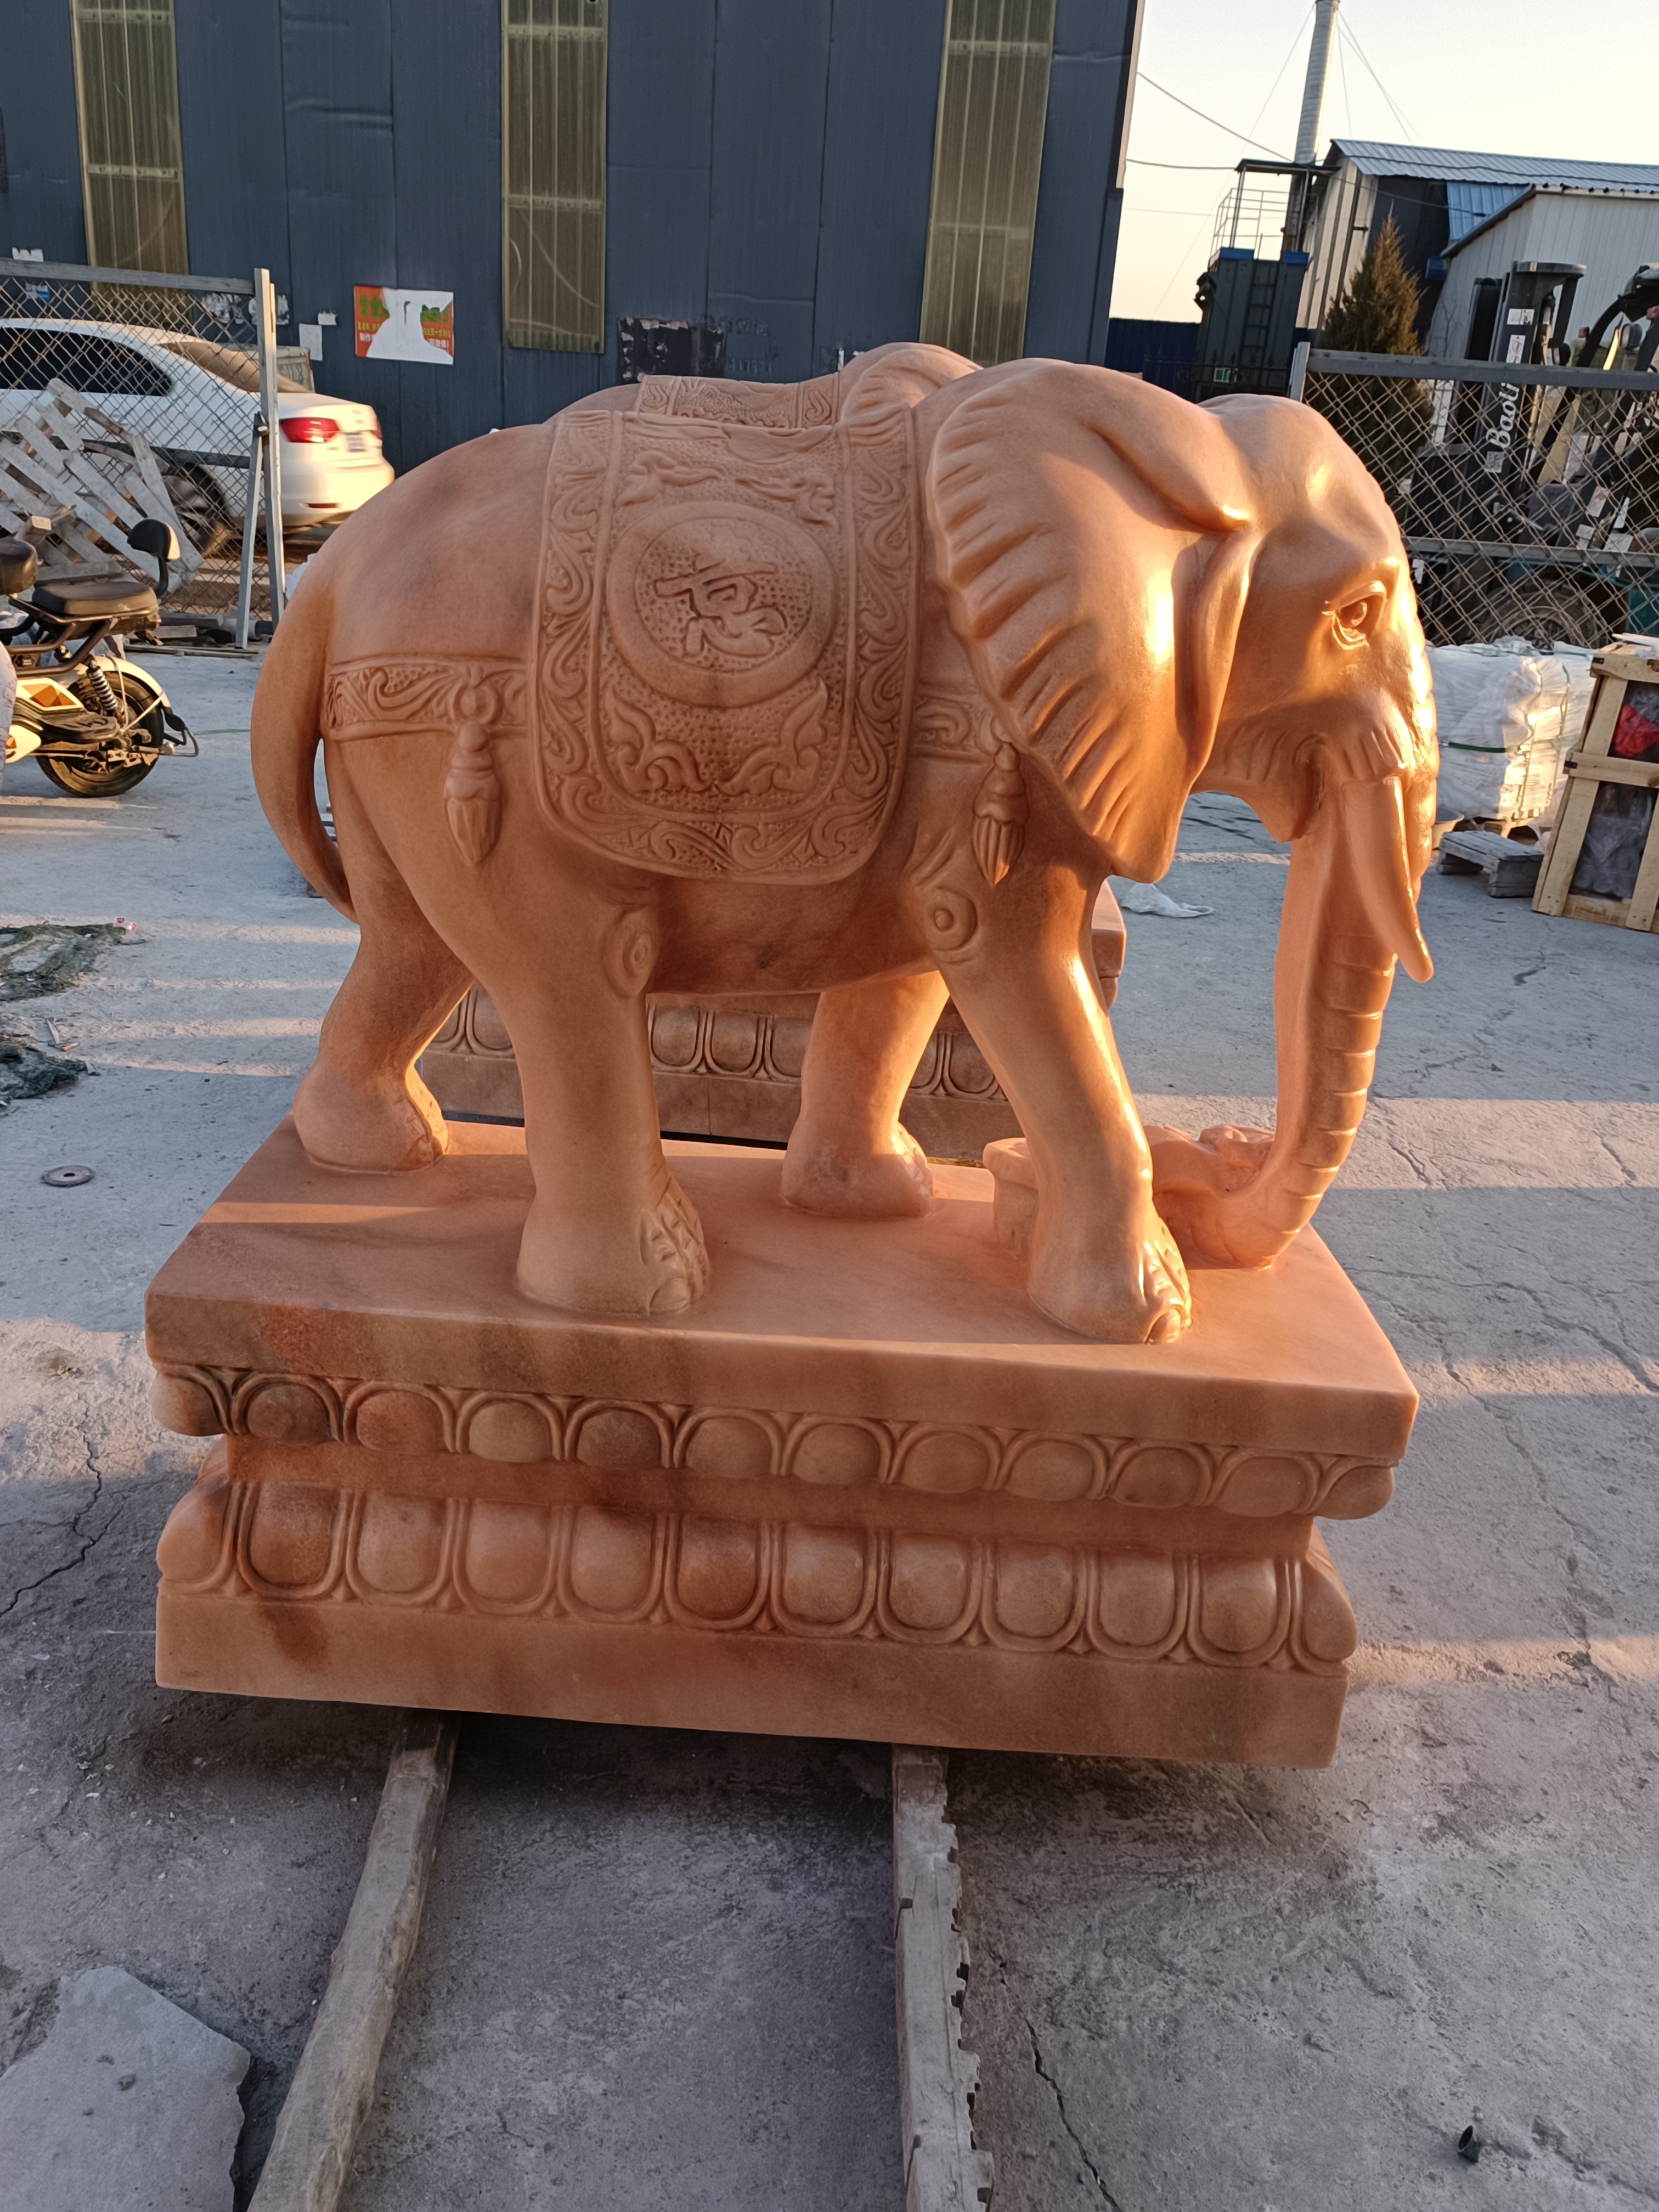 石雕大象石雕大象  大象雕塑  石雕动物大象厂家